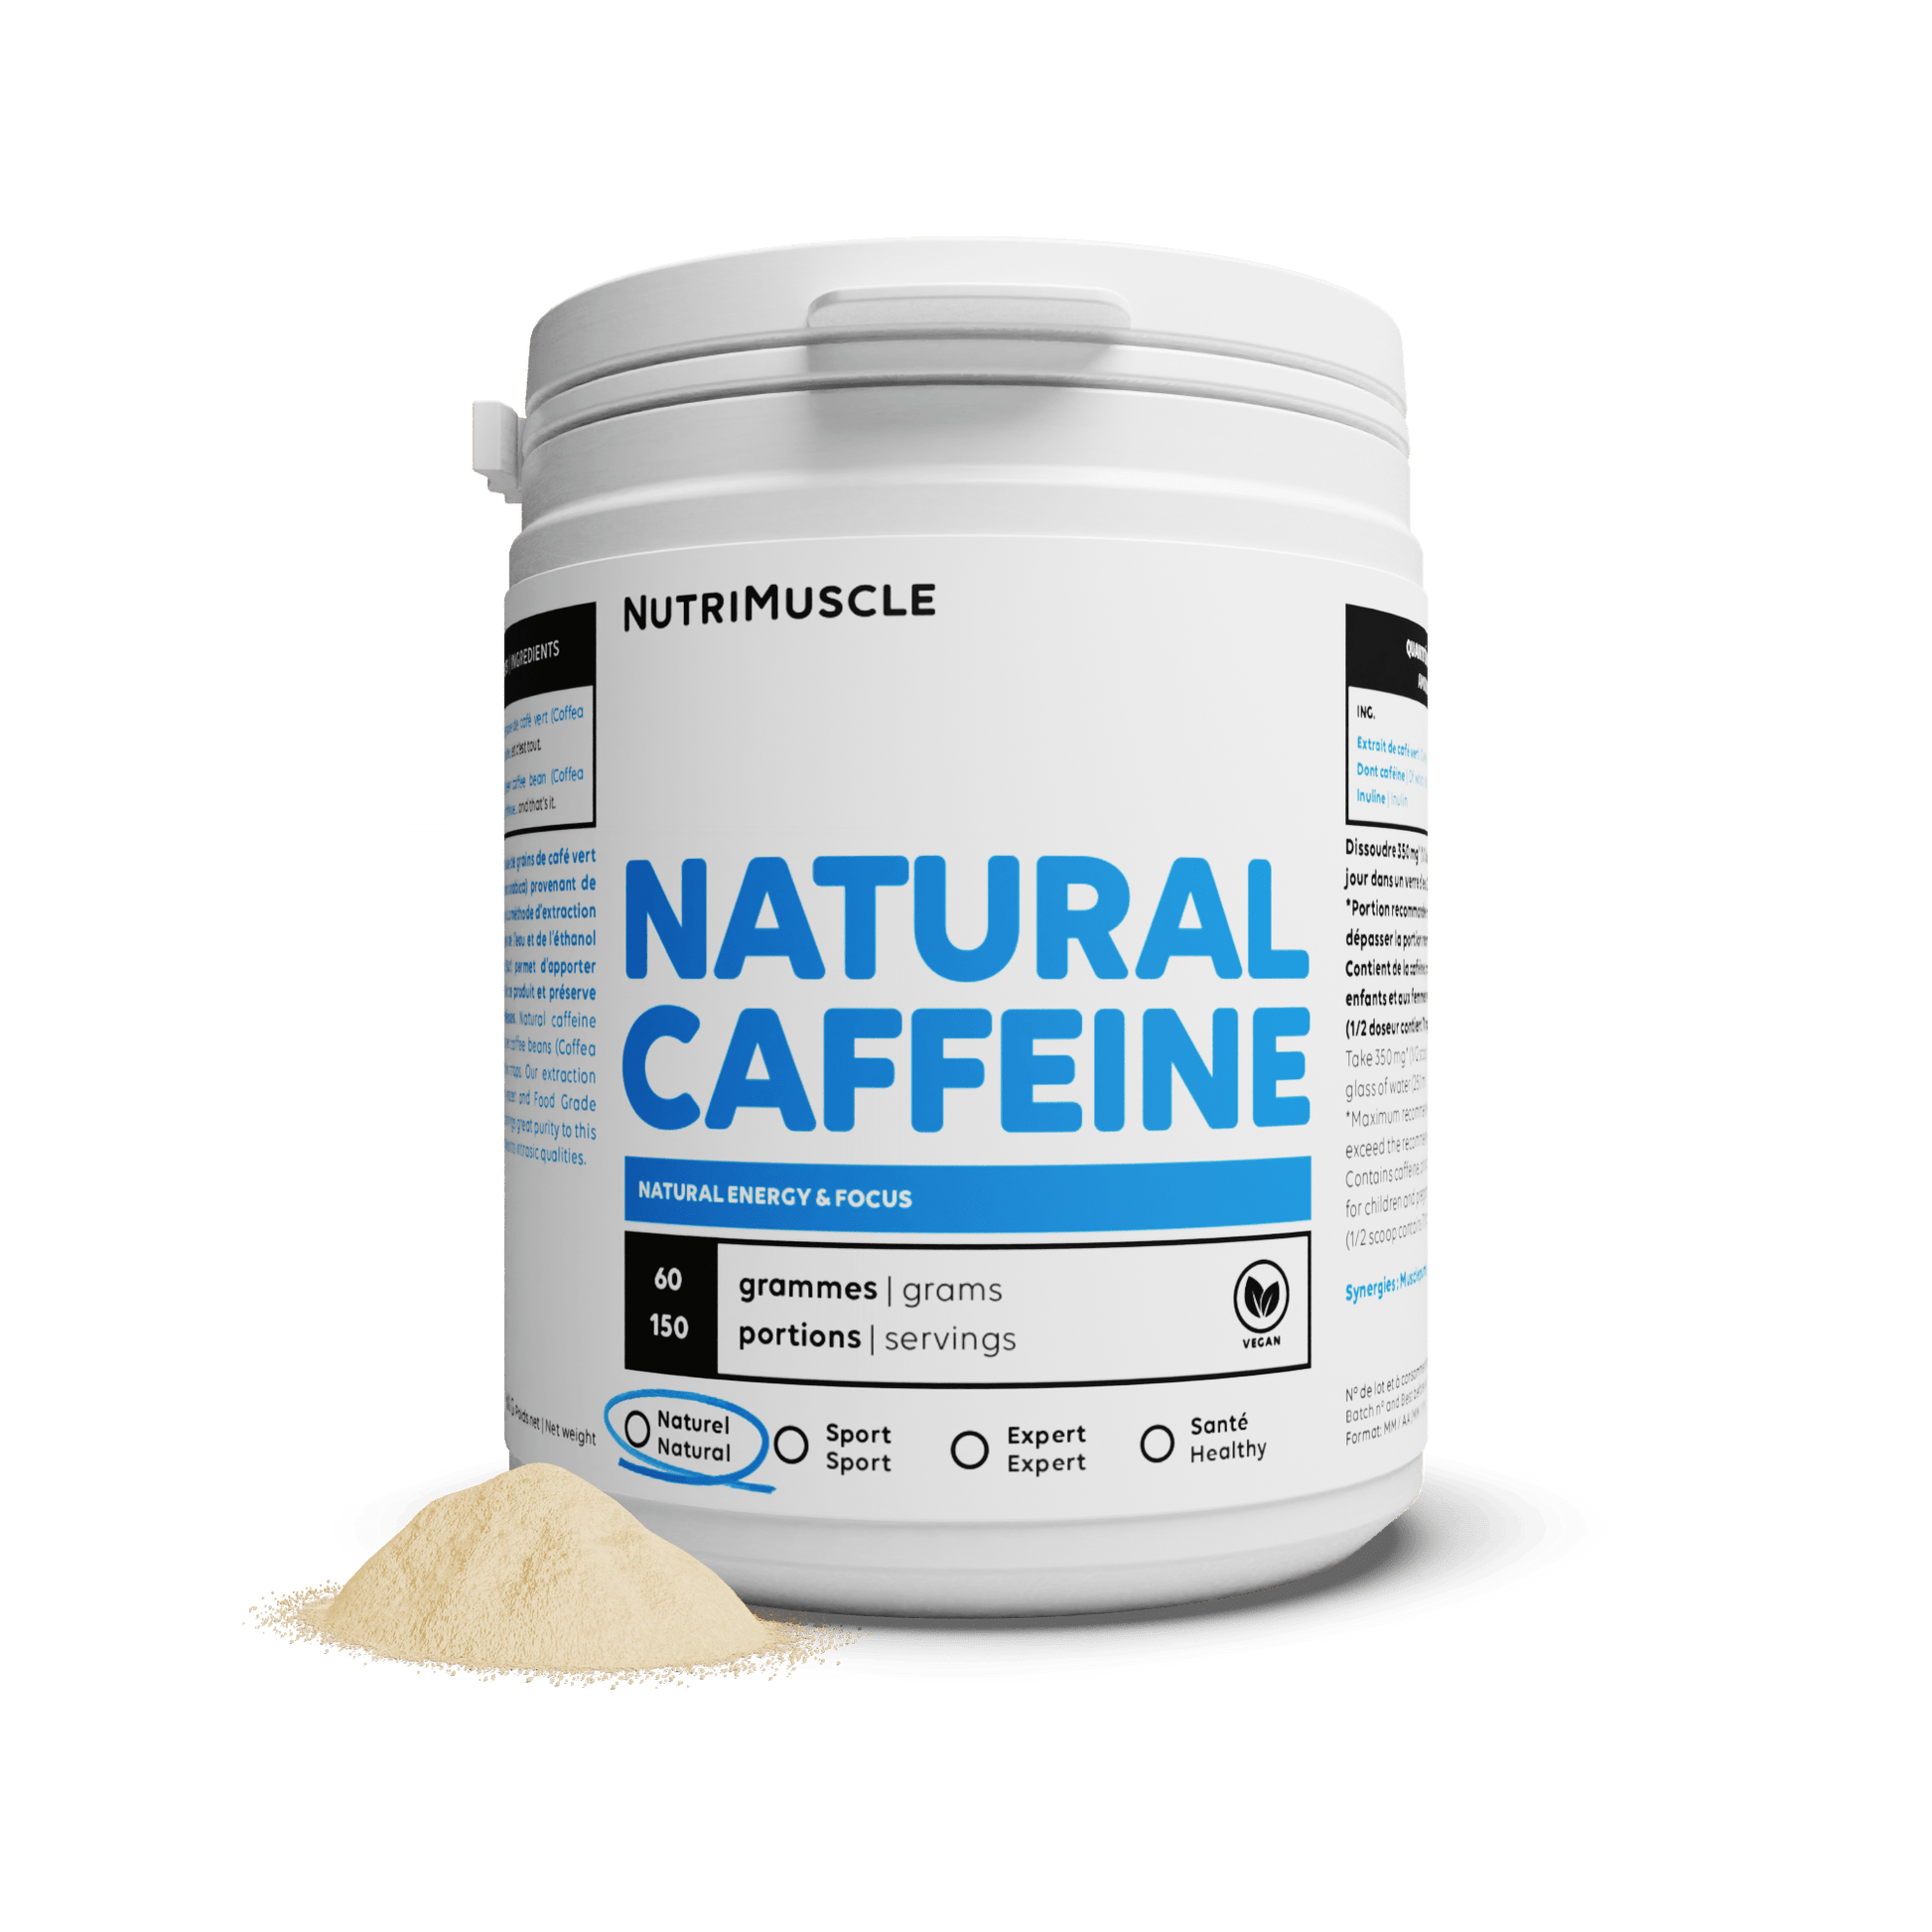 Nutrimuscle Plantes 60 g Caféine Naturelle en poudre